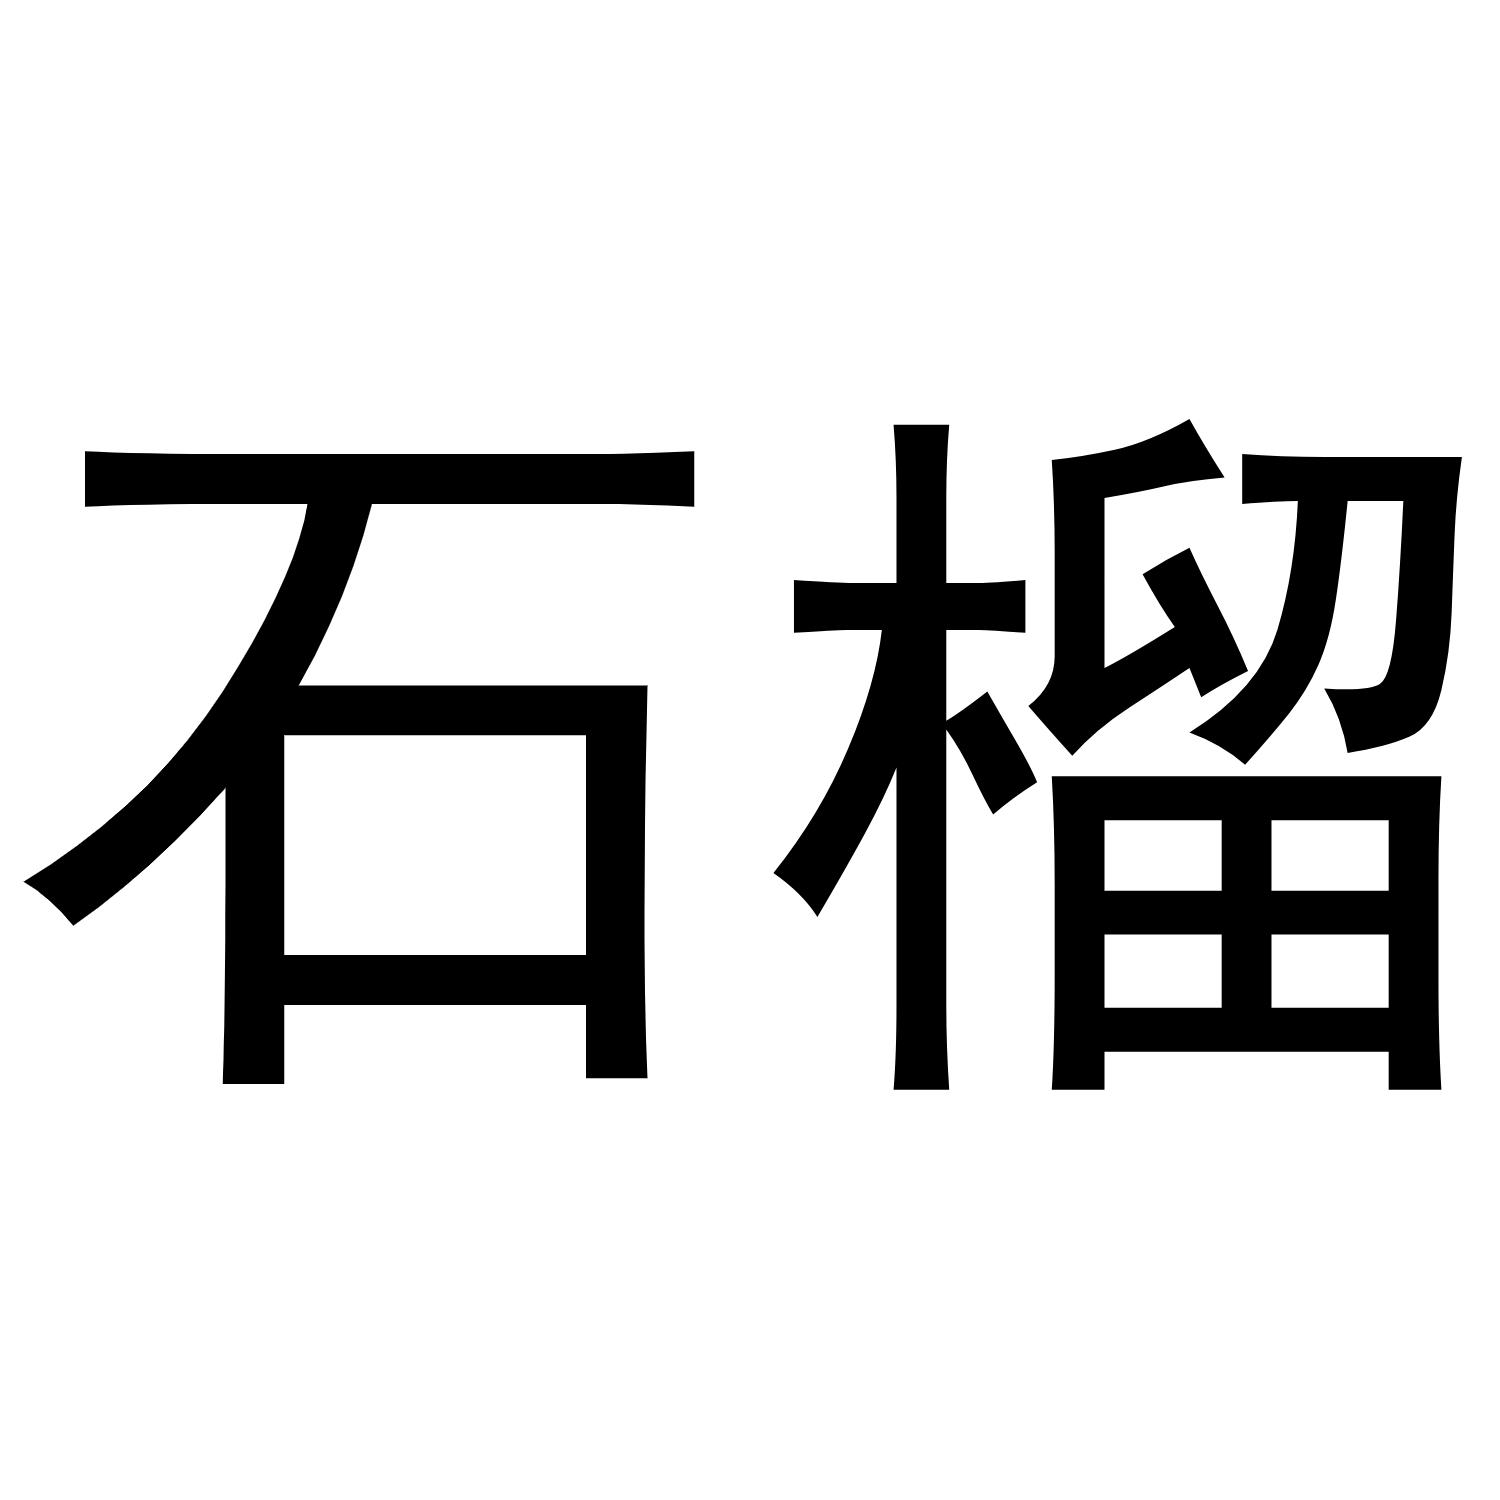 新疆石榴logo图片